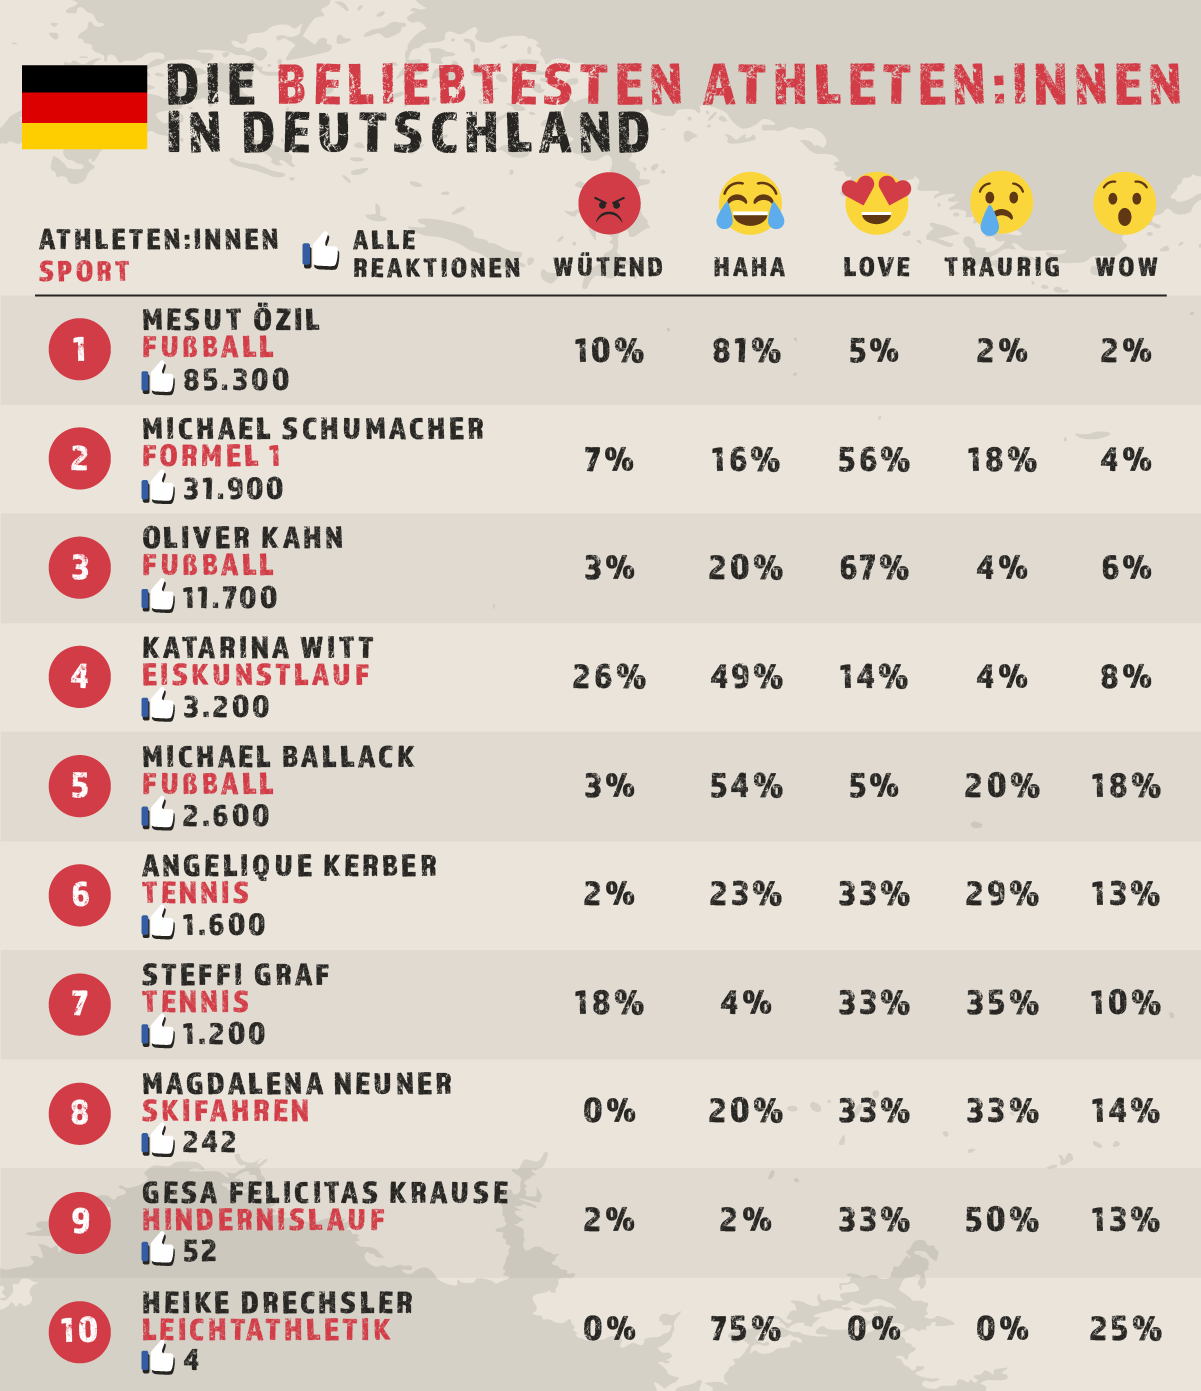 Beliebtesten athleten in Deutschland